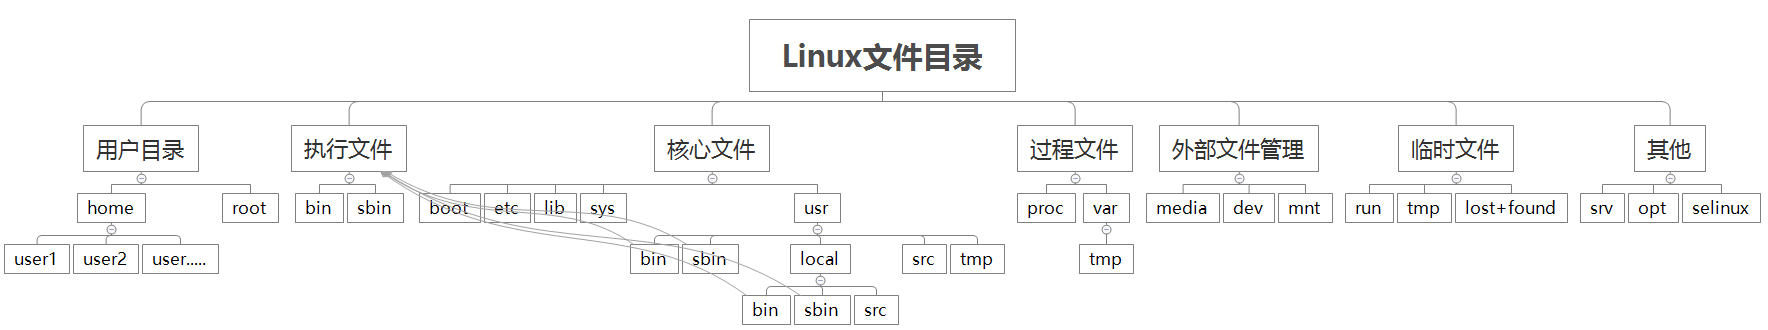 Linux系统目录结构